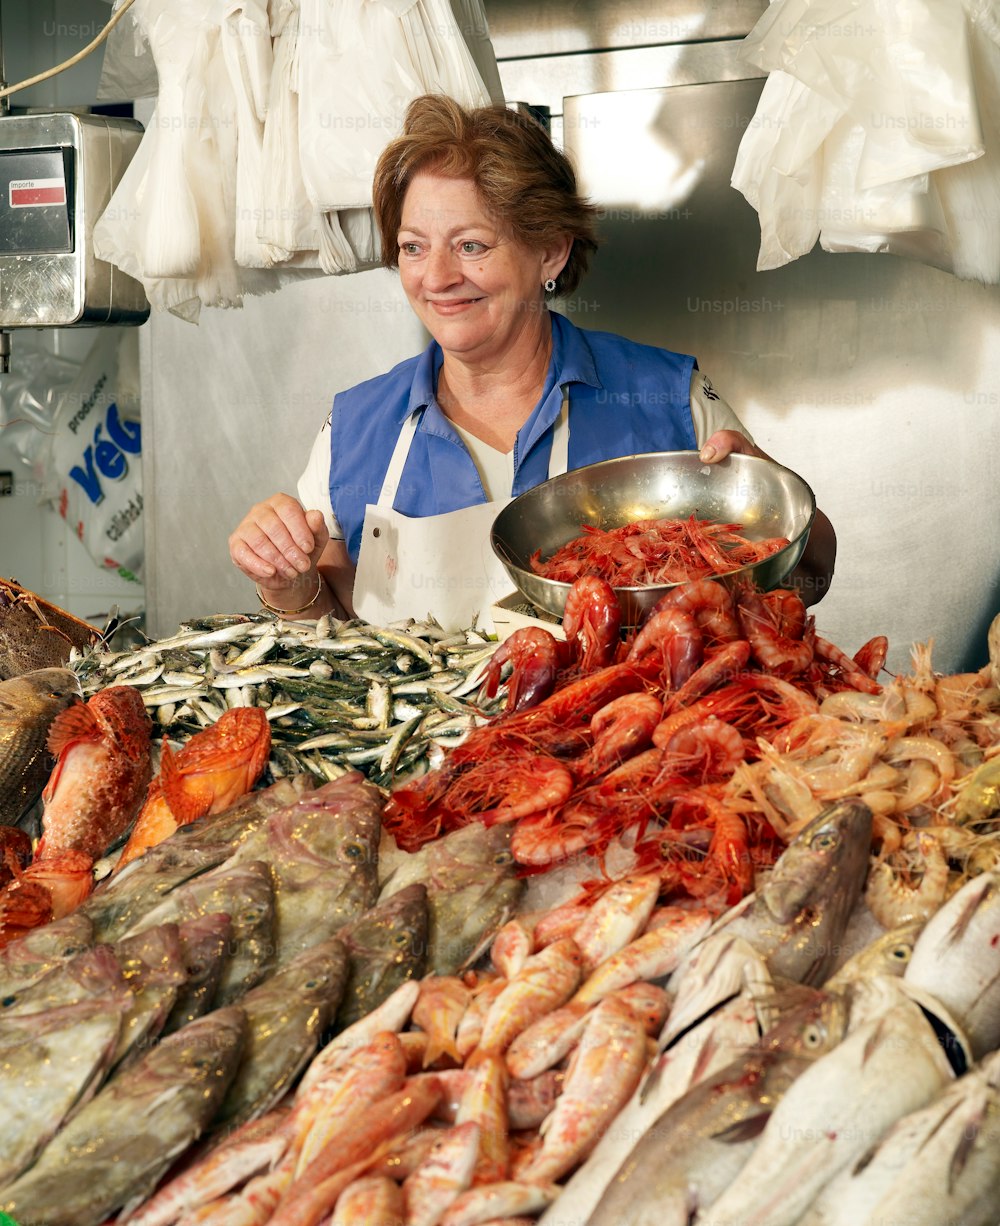 Eine Frau, die vor einem Haufen Meeresfrüchte steht